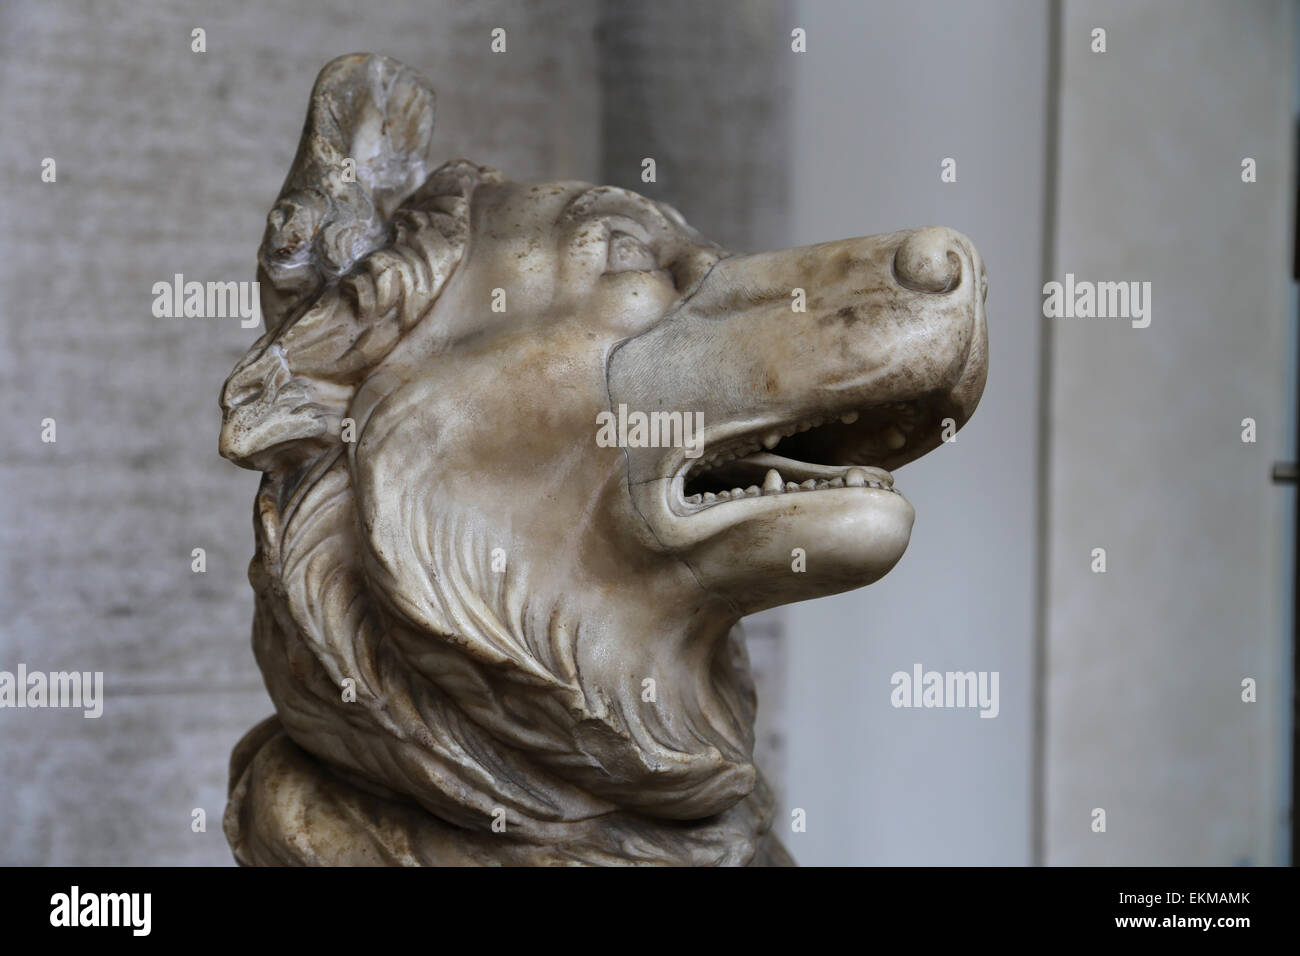 La scultura del cane. Imperial copia romana di età ellenistica statua in bronzo originale del III secolo a.C.. Musei Vaticani. Città del Vaticano. Foto Stock